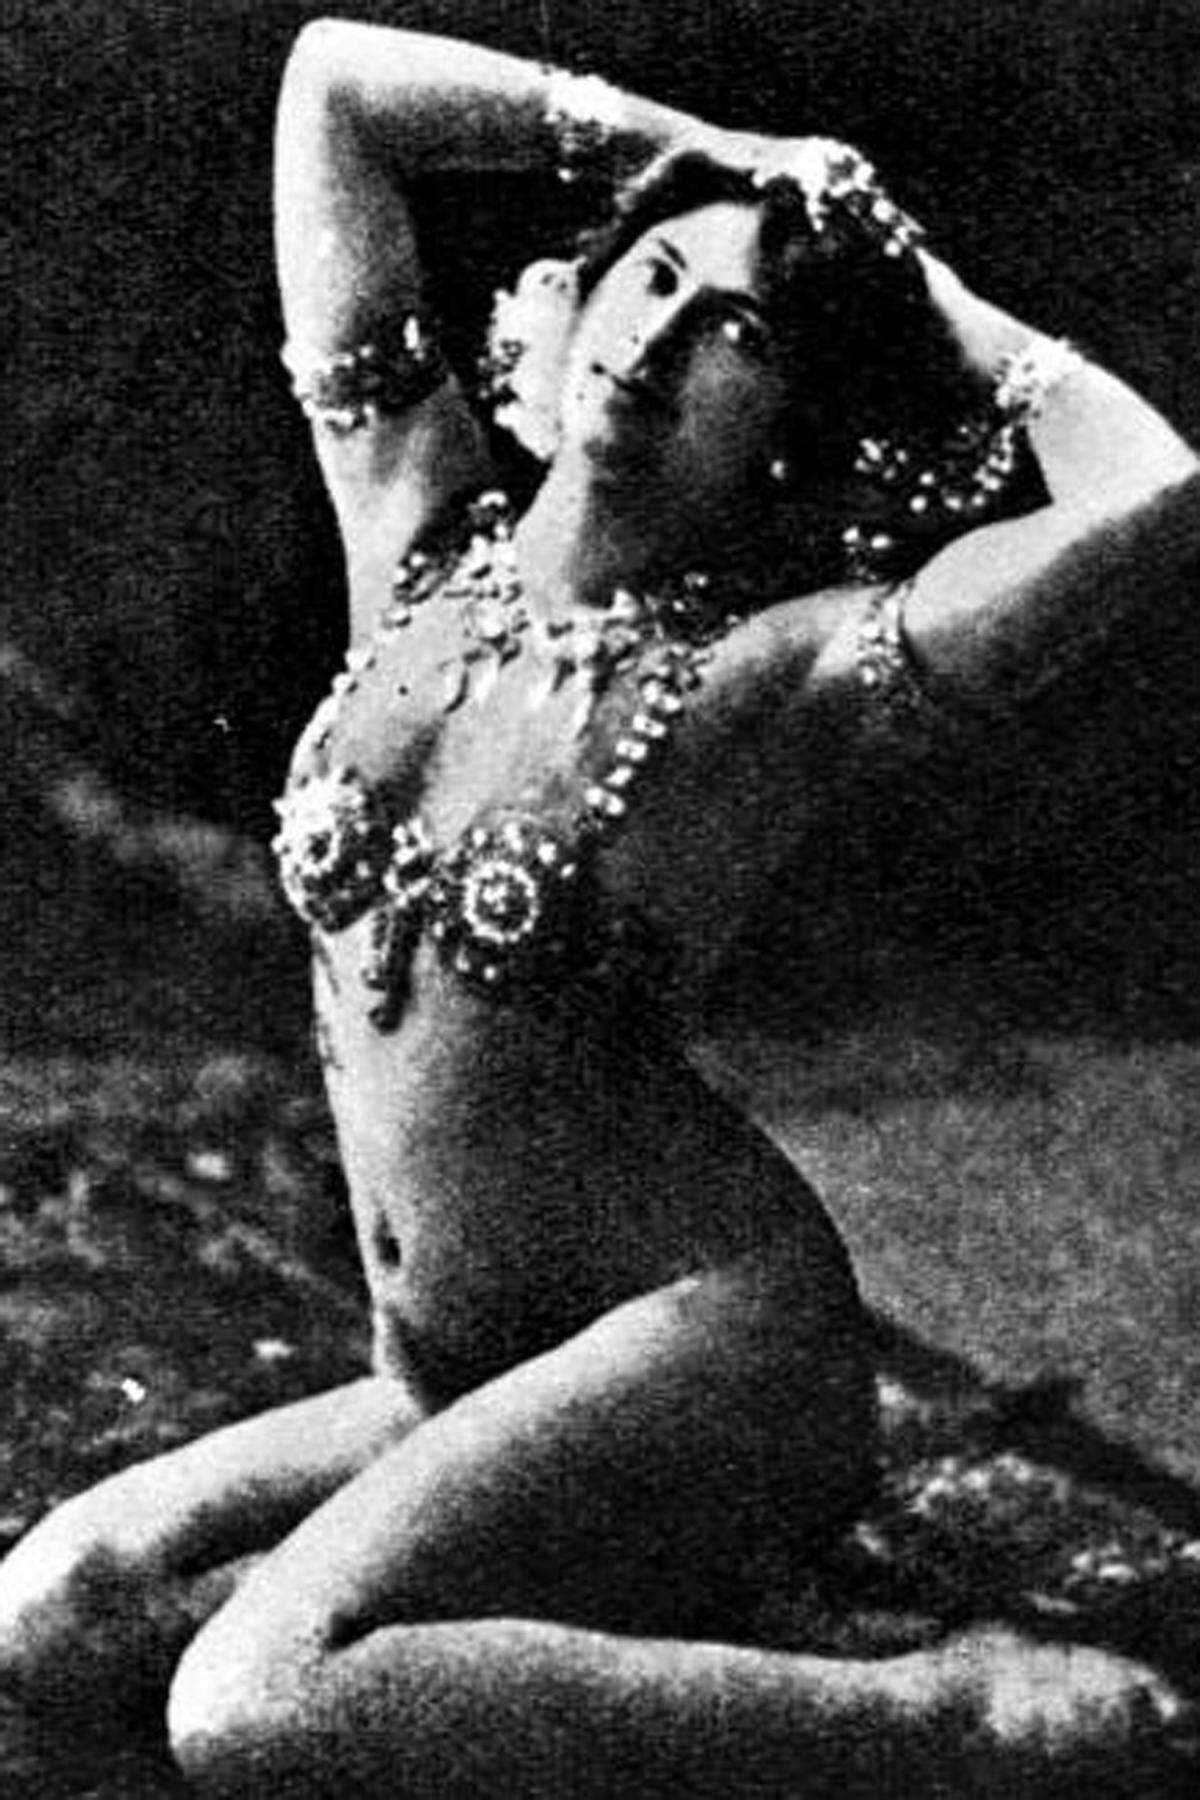 Ein der schillerndsten Figuren unter den berühmten Spionen ist Margaretha Zelle. Sie machte sich zu Beginn des 20. Jahrhunderts in Paris als exotische Nackttänzerin Mata Hari einen Namen. Zahlreiche Affären mit einflussreichen Persönlichkeiten brachten den deutschen Geheimdienst auf sie. Mata Hari willigte ein und lieferte im ersten Weltkrieg zunächst nützliche Informationen über französische Truppenbewegungen.